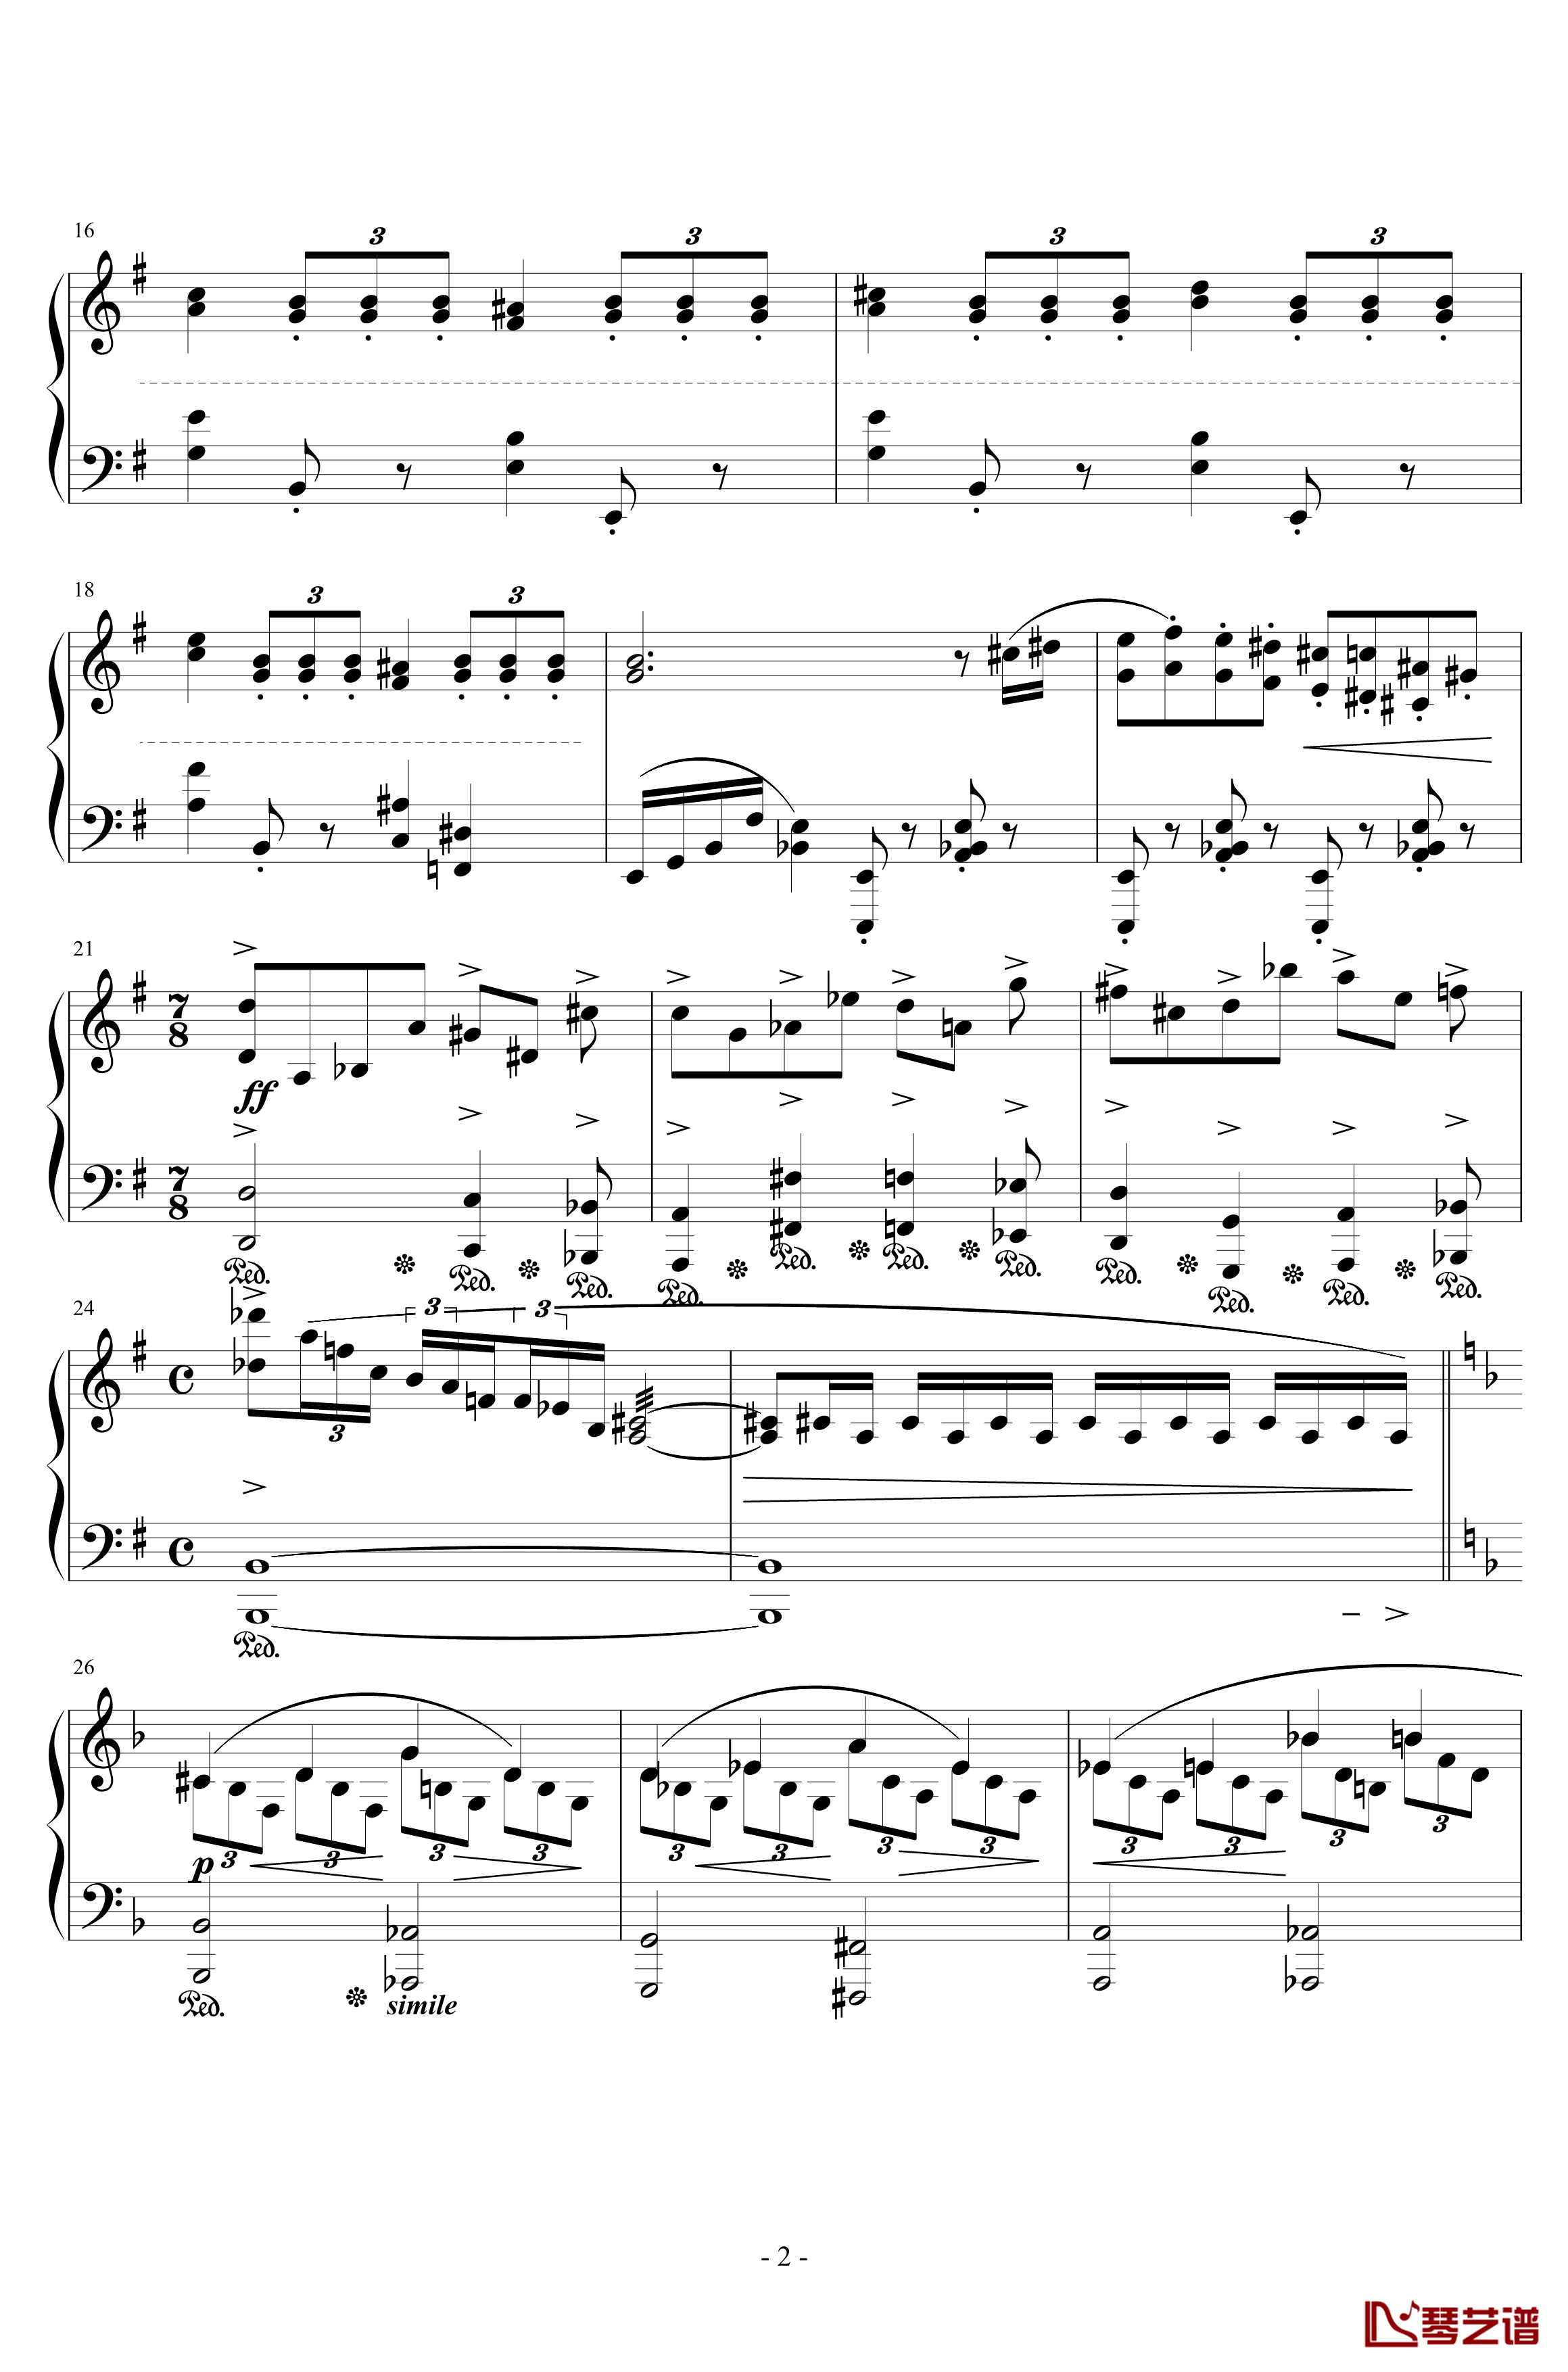 单翼天使钢琴版钢琴谱-植松伸夫2